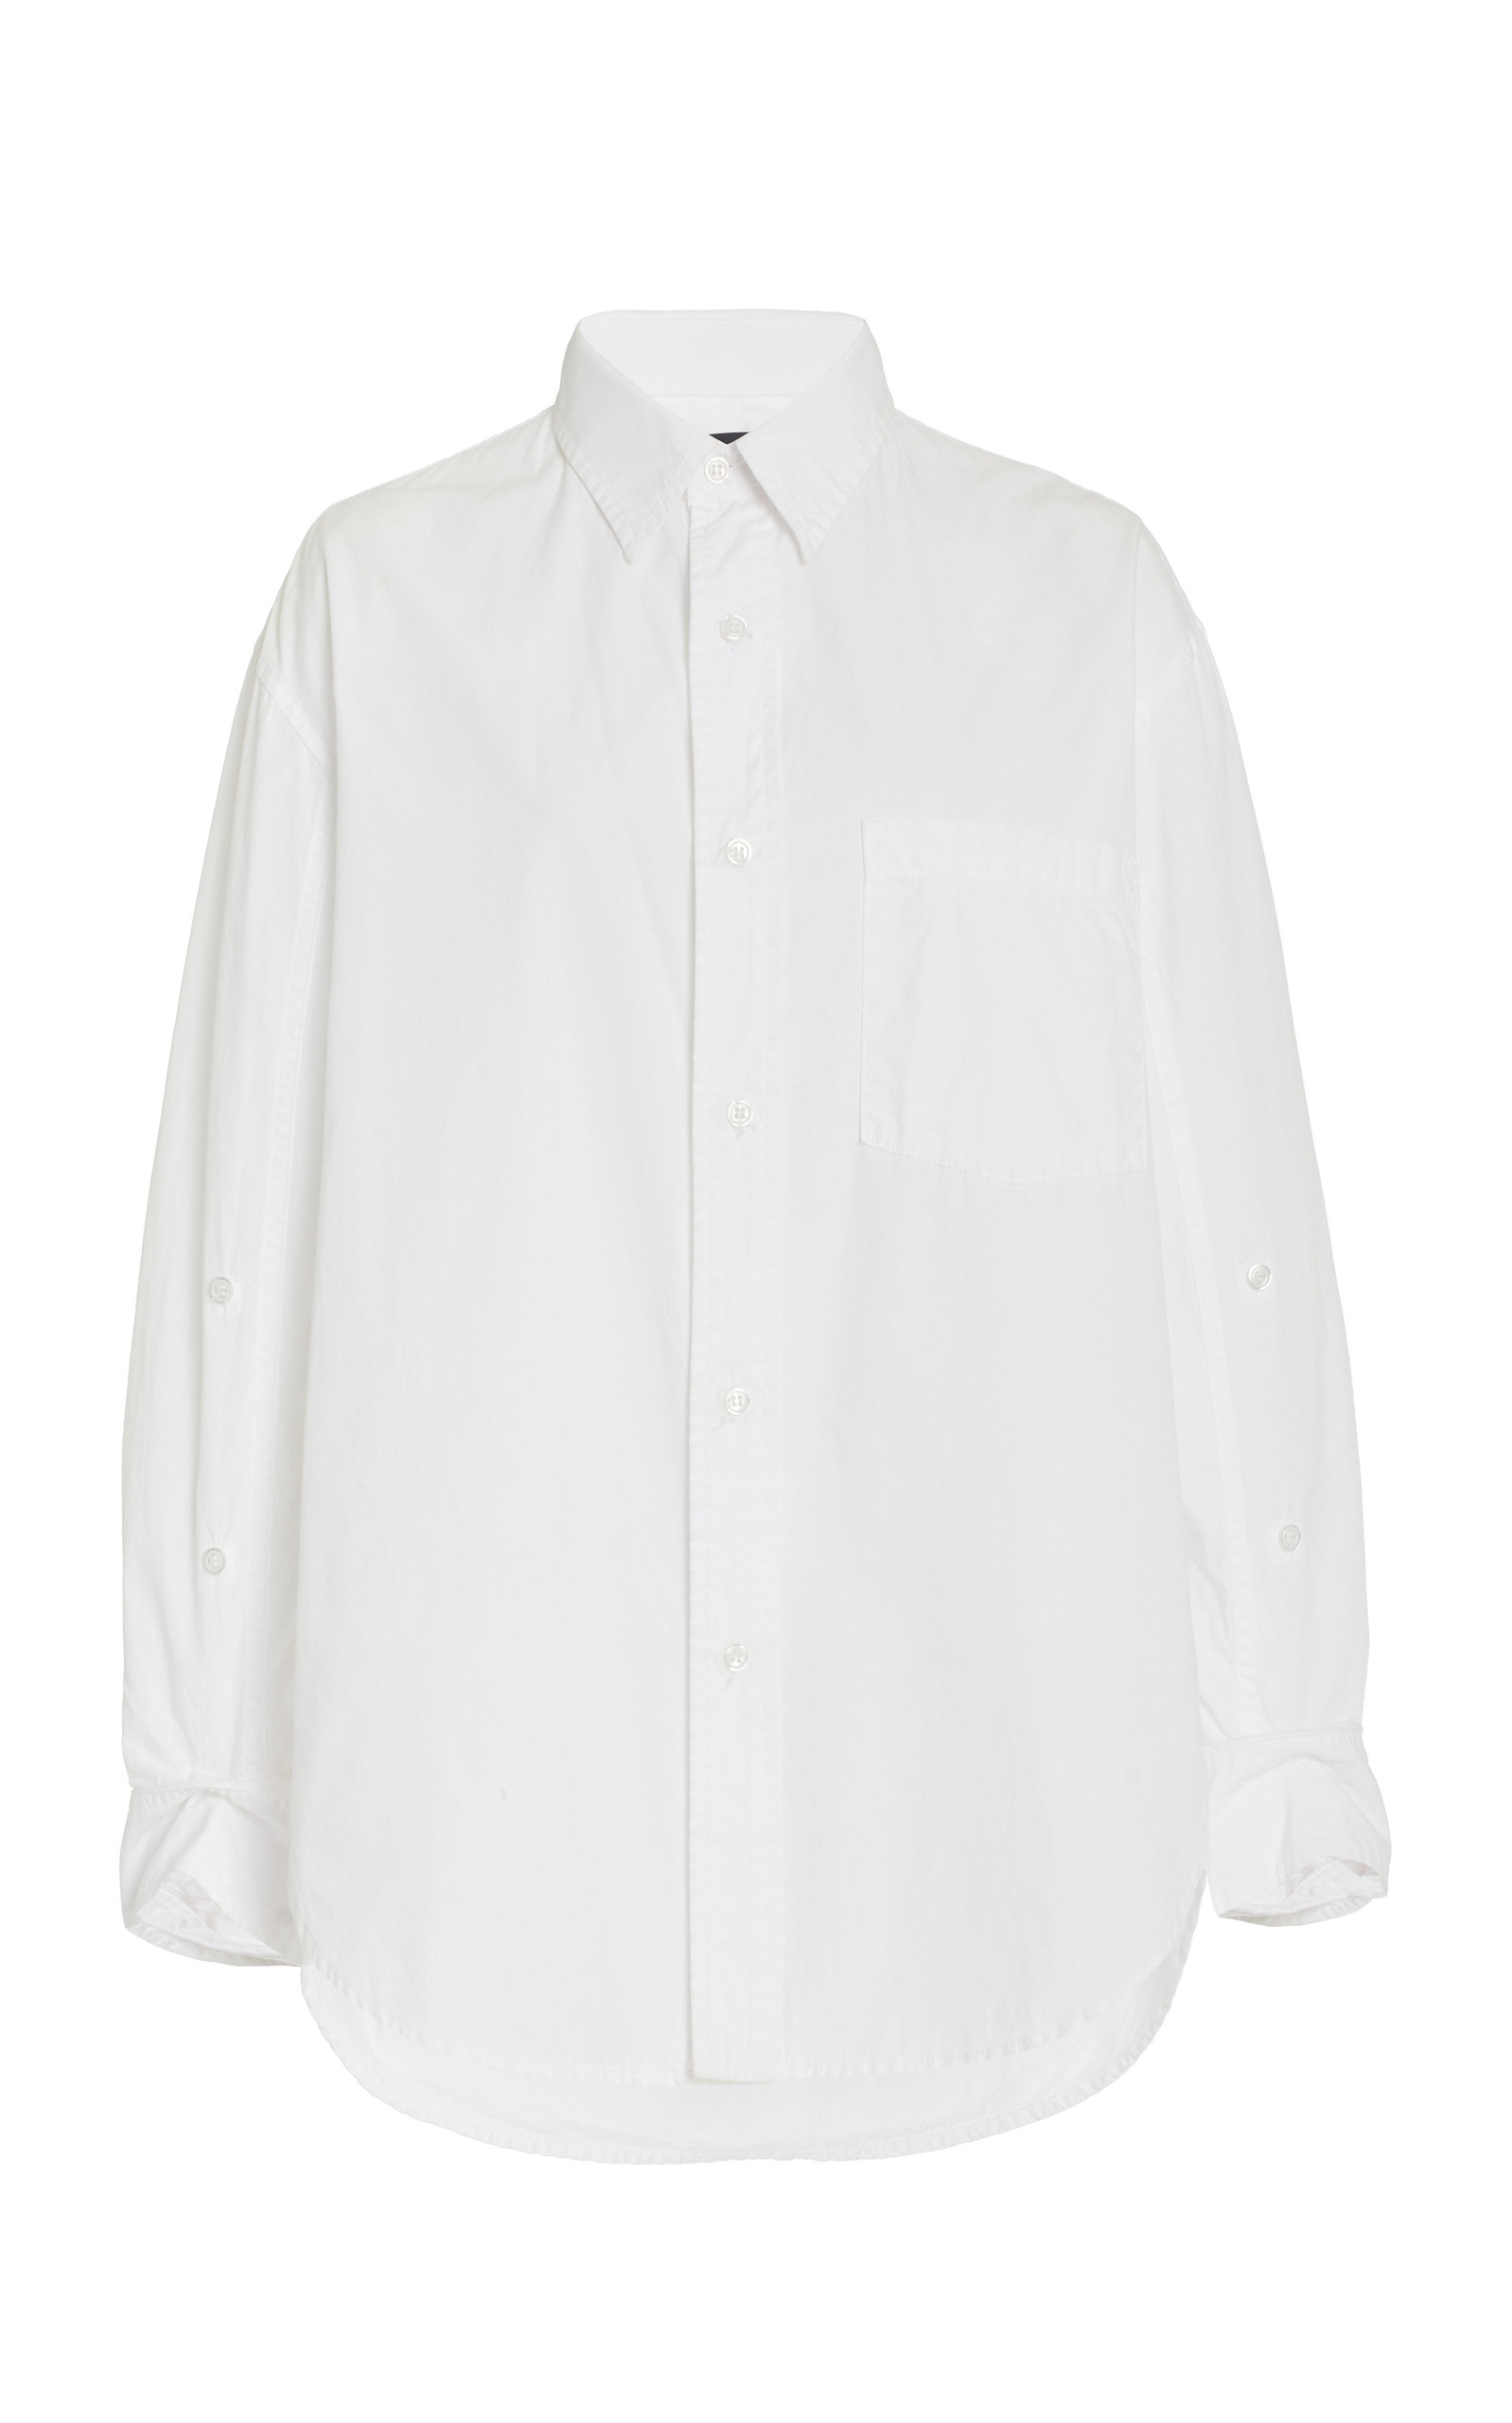 Citizens of Humanity - Women's Kayla Oversized Cotton Shirt - White - XS - Moda Operandi